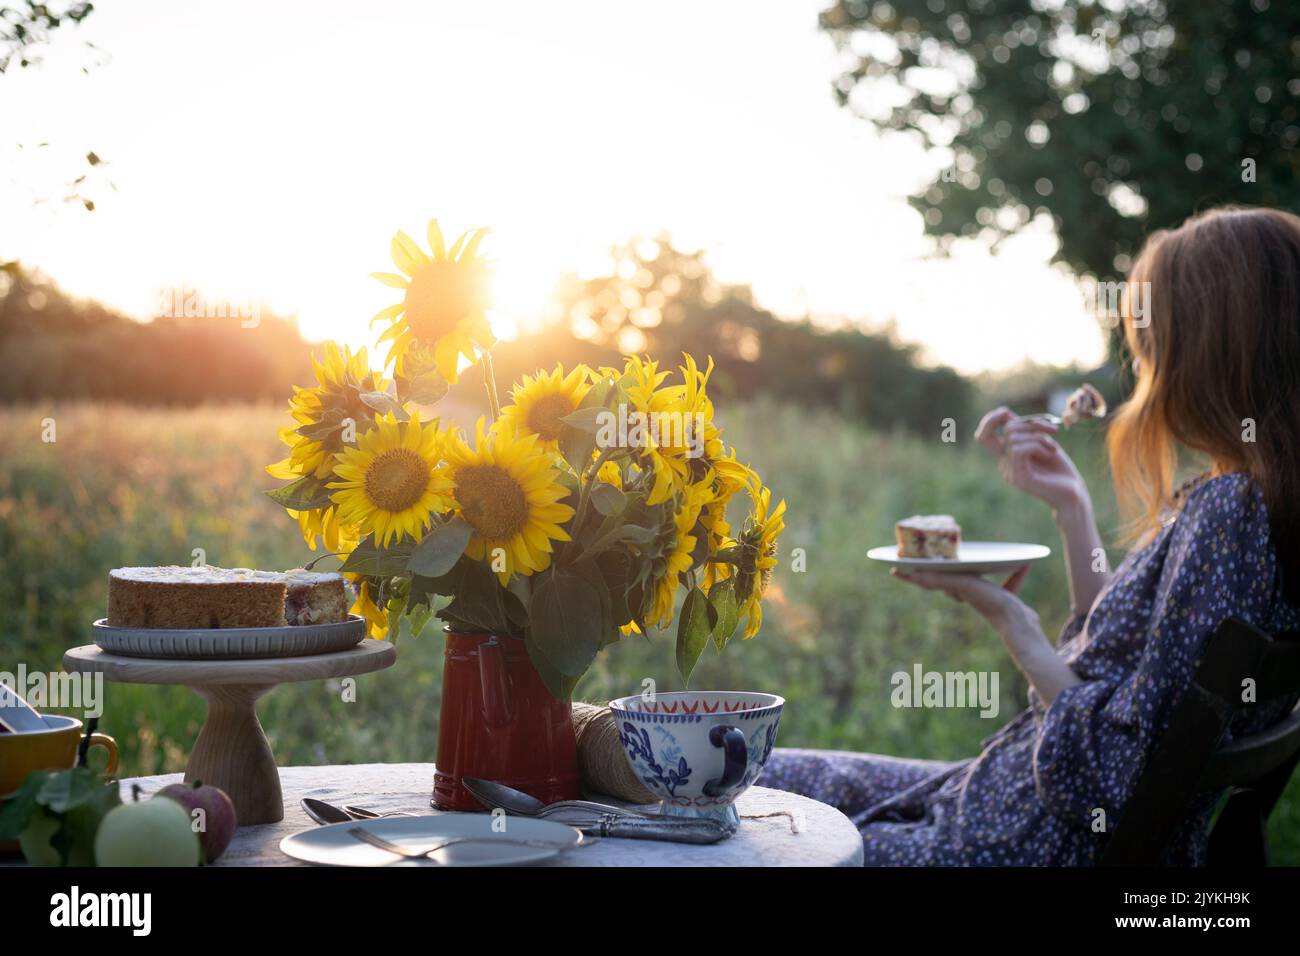 una niña se sienta en el jardín y come un pastel, un jarrón con girasoles y manzanas sobre una mesa Foto de stock